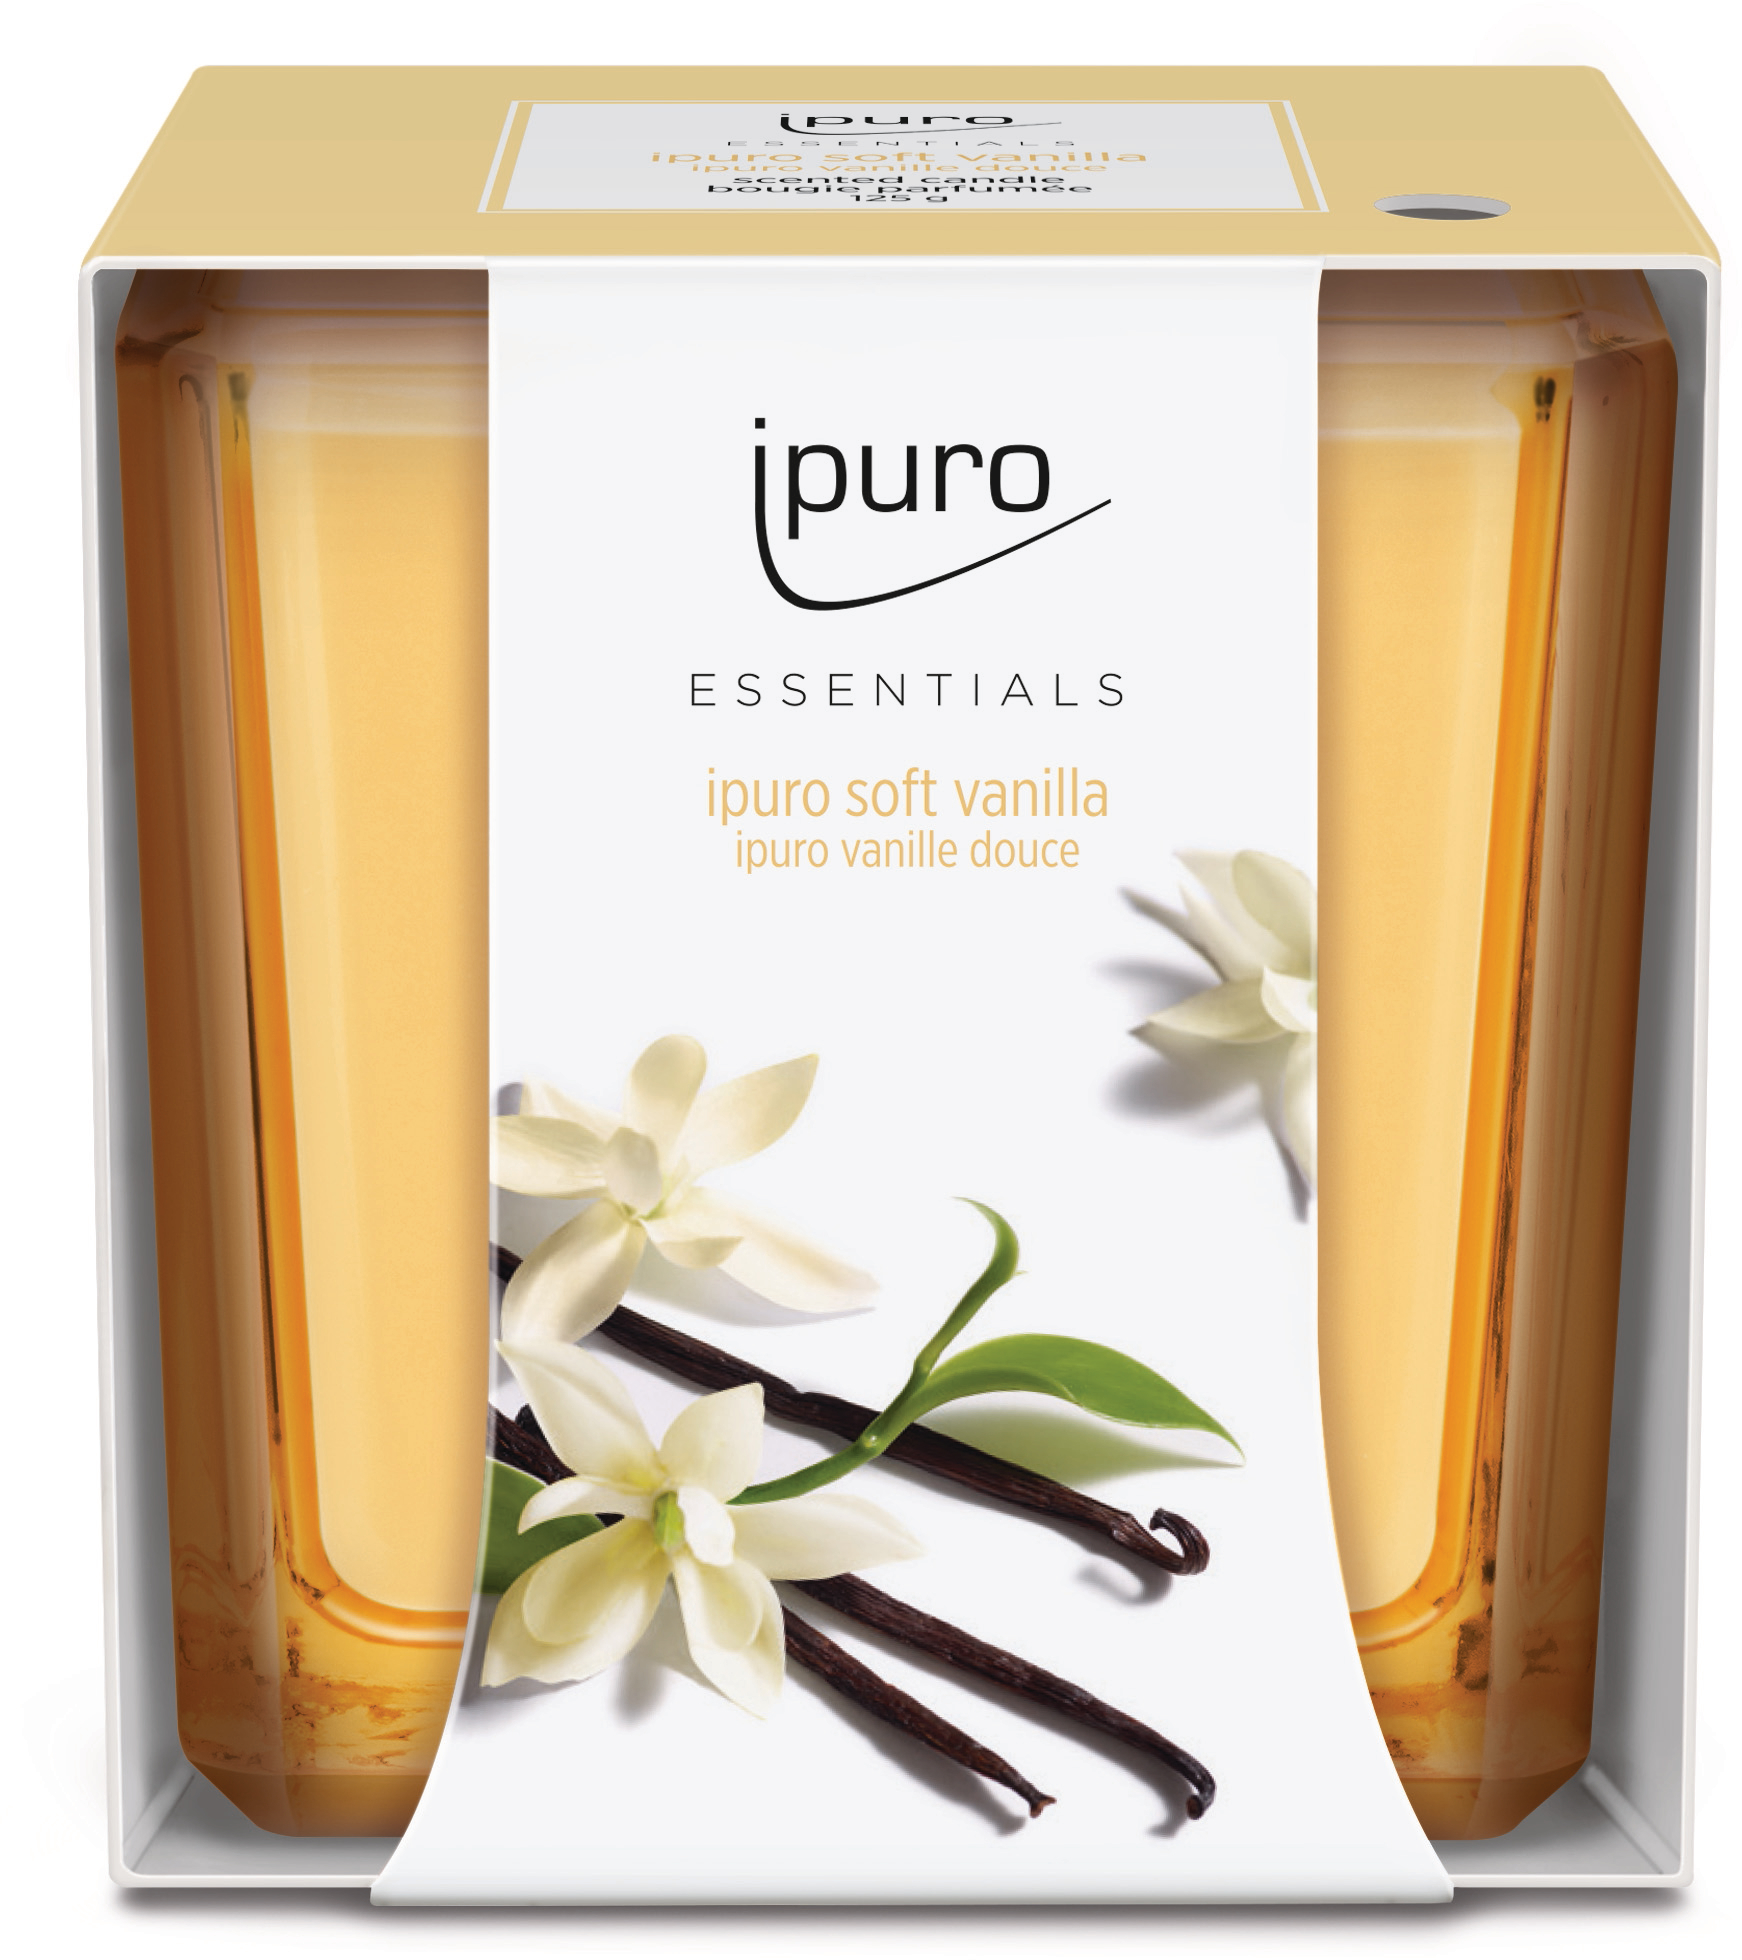 IPURO Bougie parfumée Essentials 051.1207 soft vanilla 125g